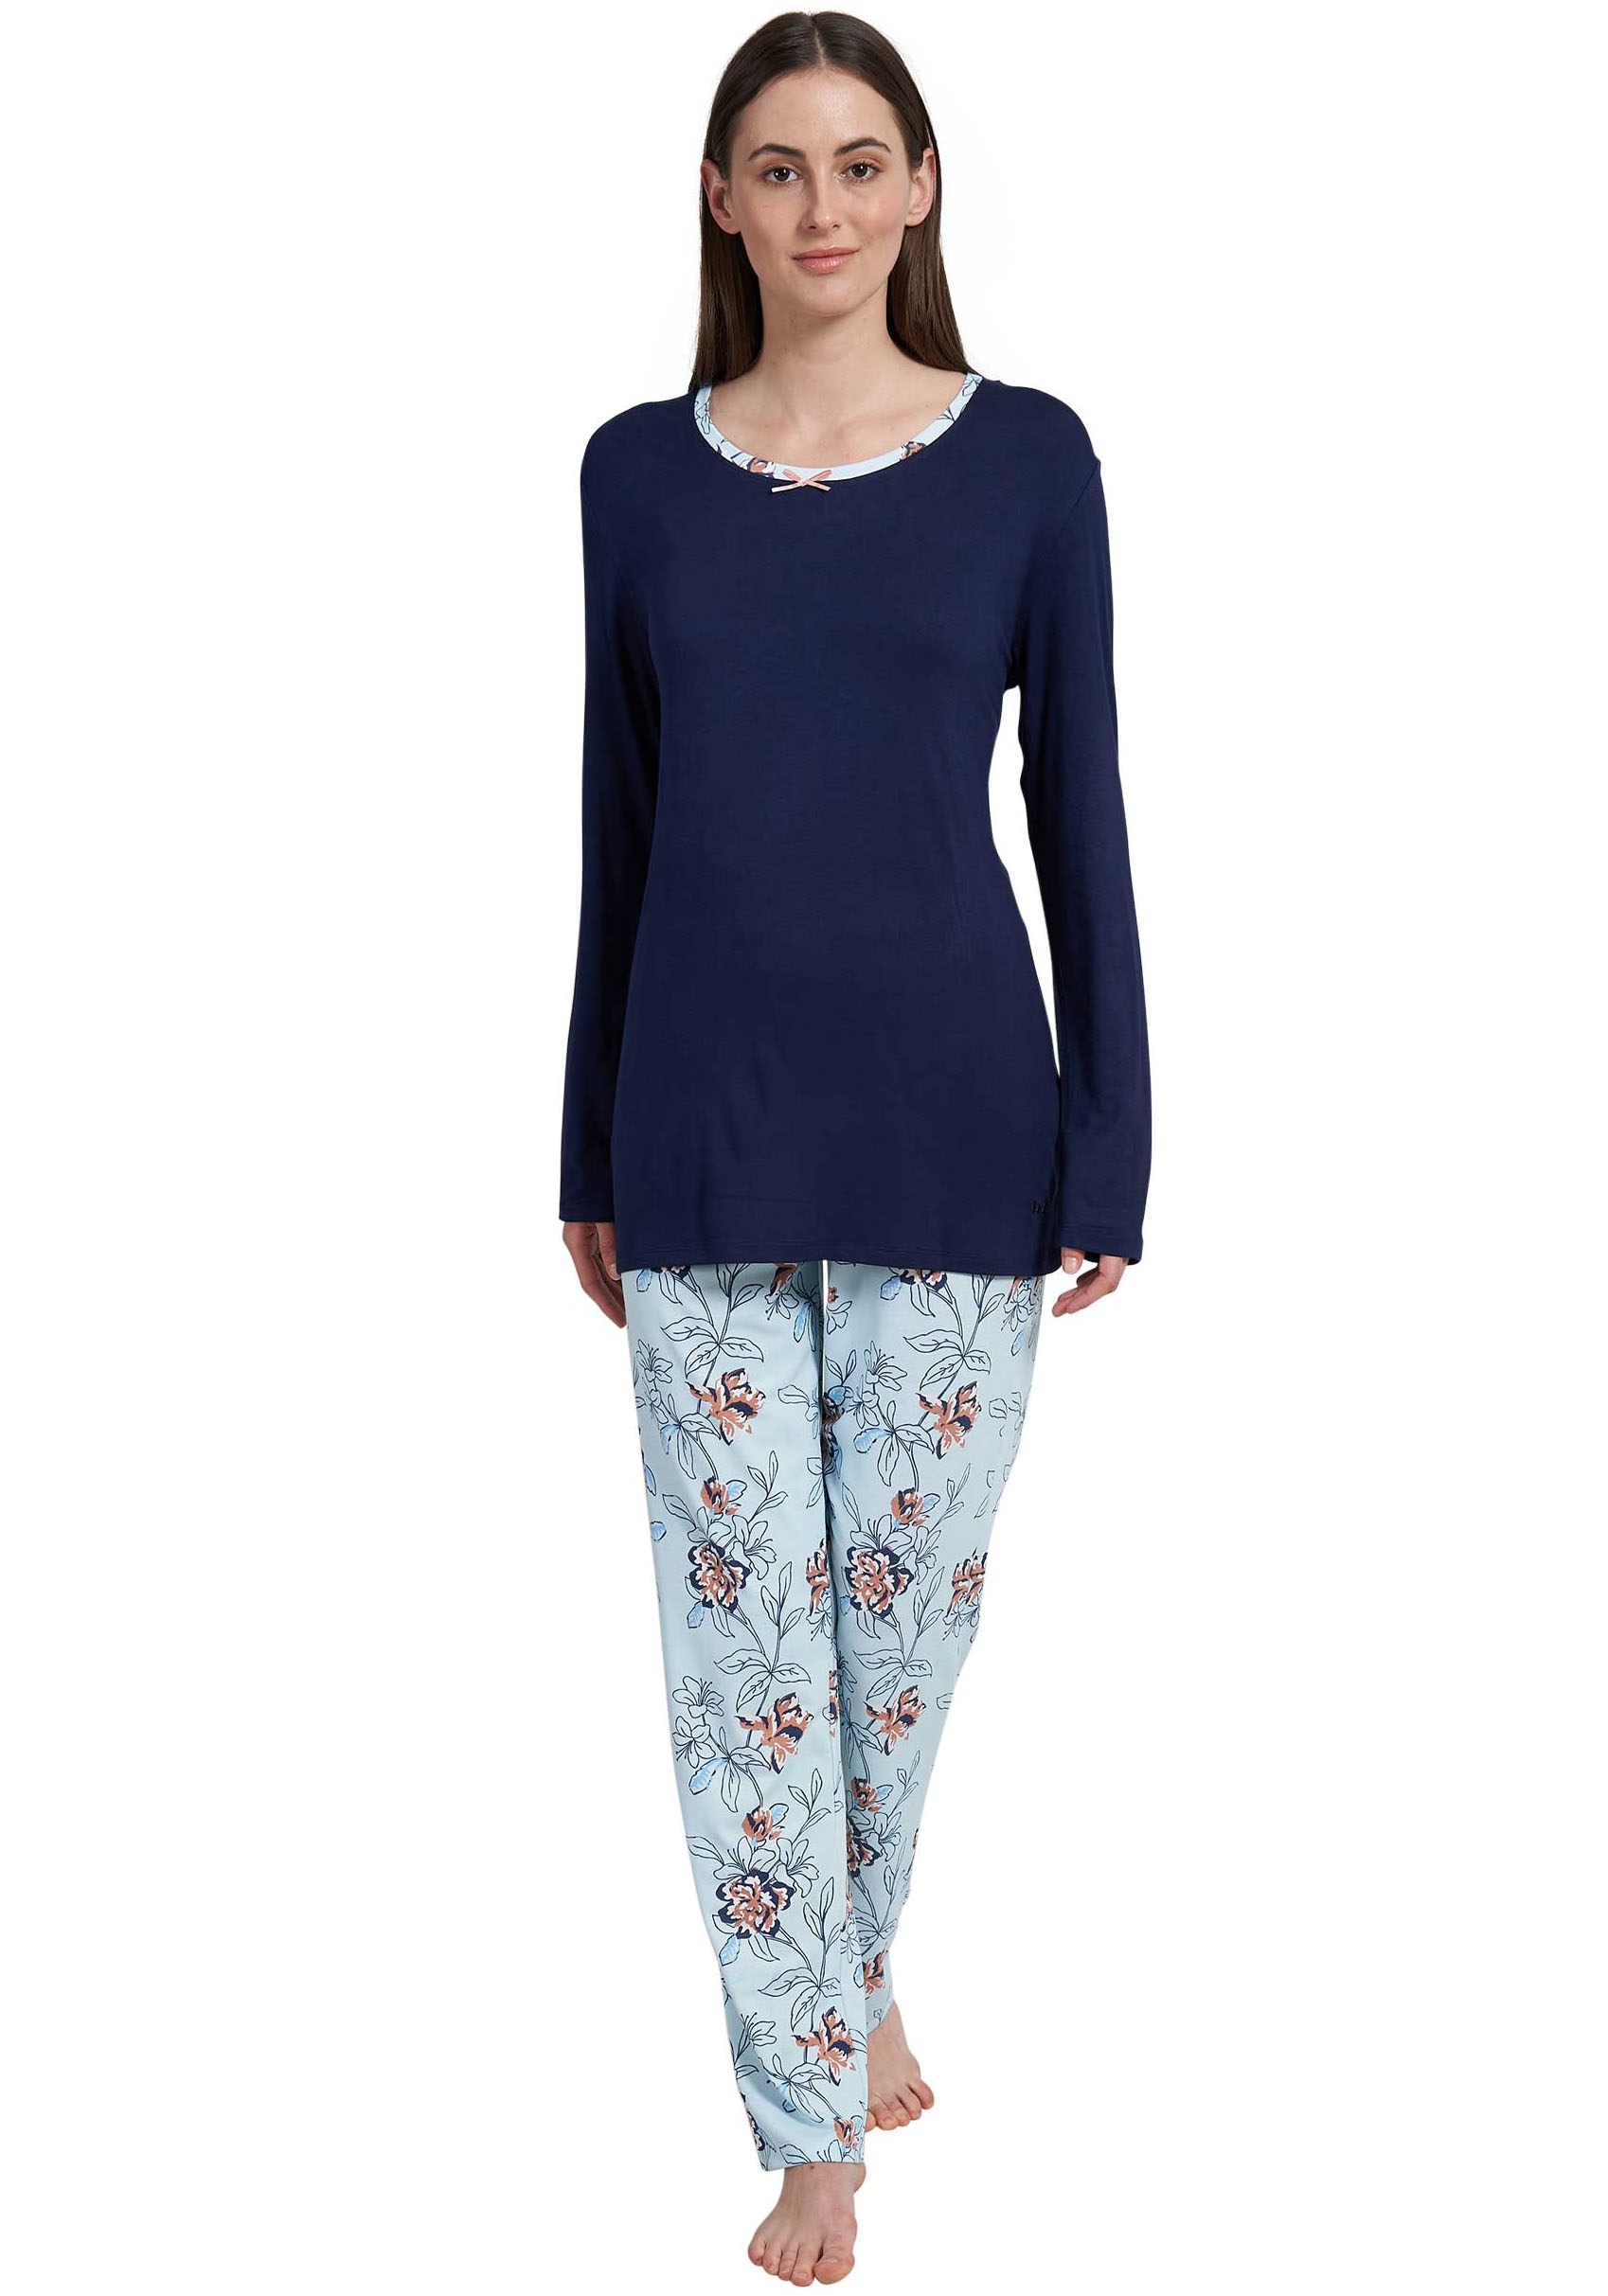 GÖTZBURG Pyjama, (2 tlg.), mit floralem Print undkleiner Schleife als Hingucker